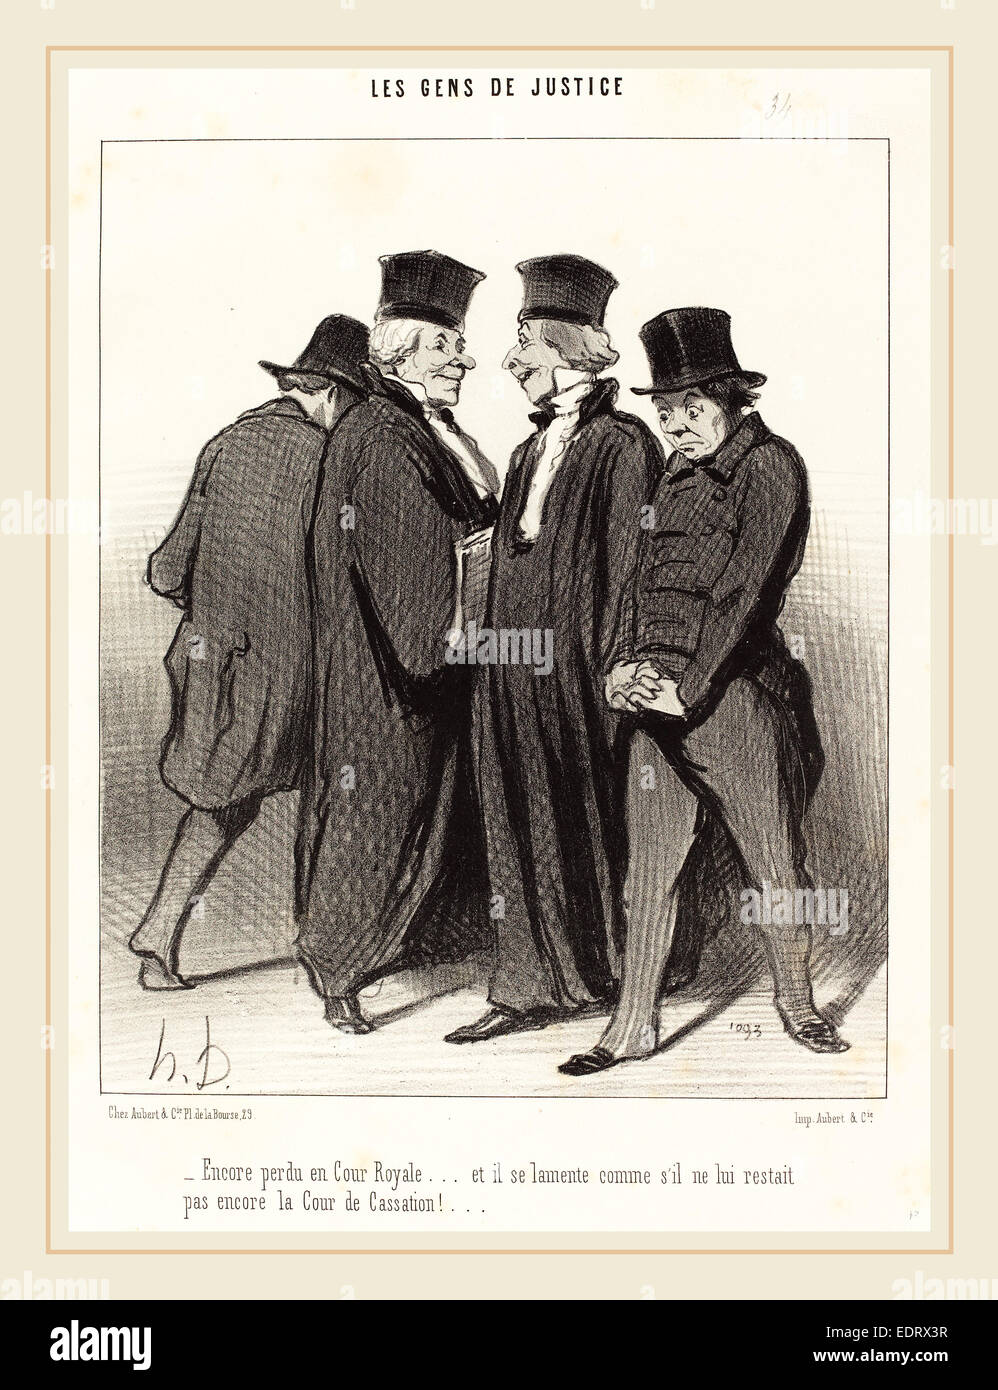 Honoré Daumier (French, 1808-1879), Encore perdu en Cour Royale et il se lamente, 1848, lithograph Stock Photo